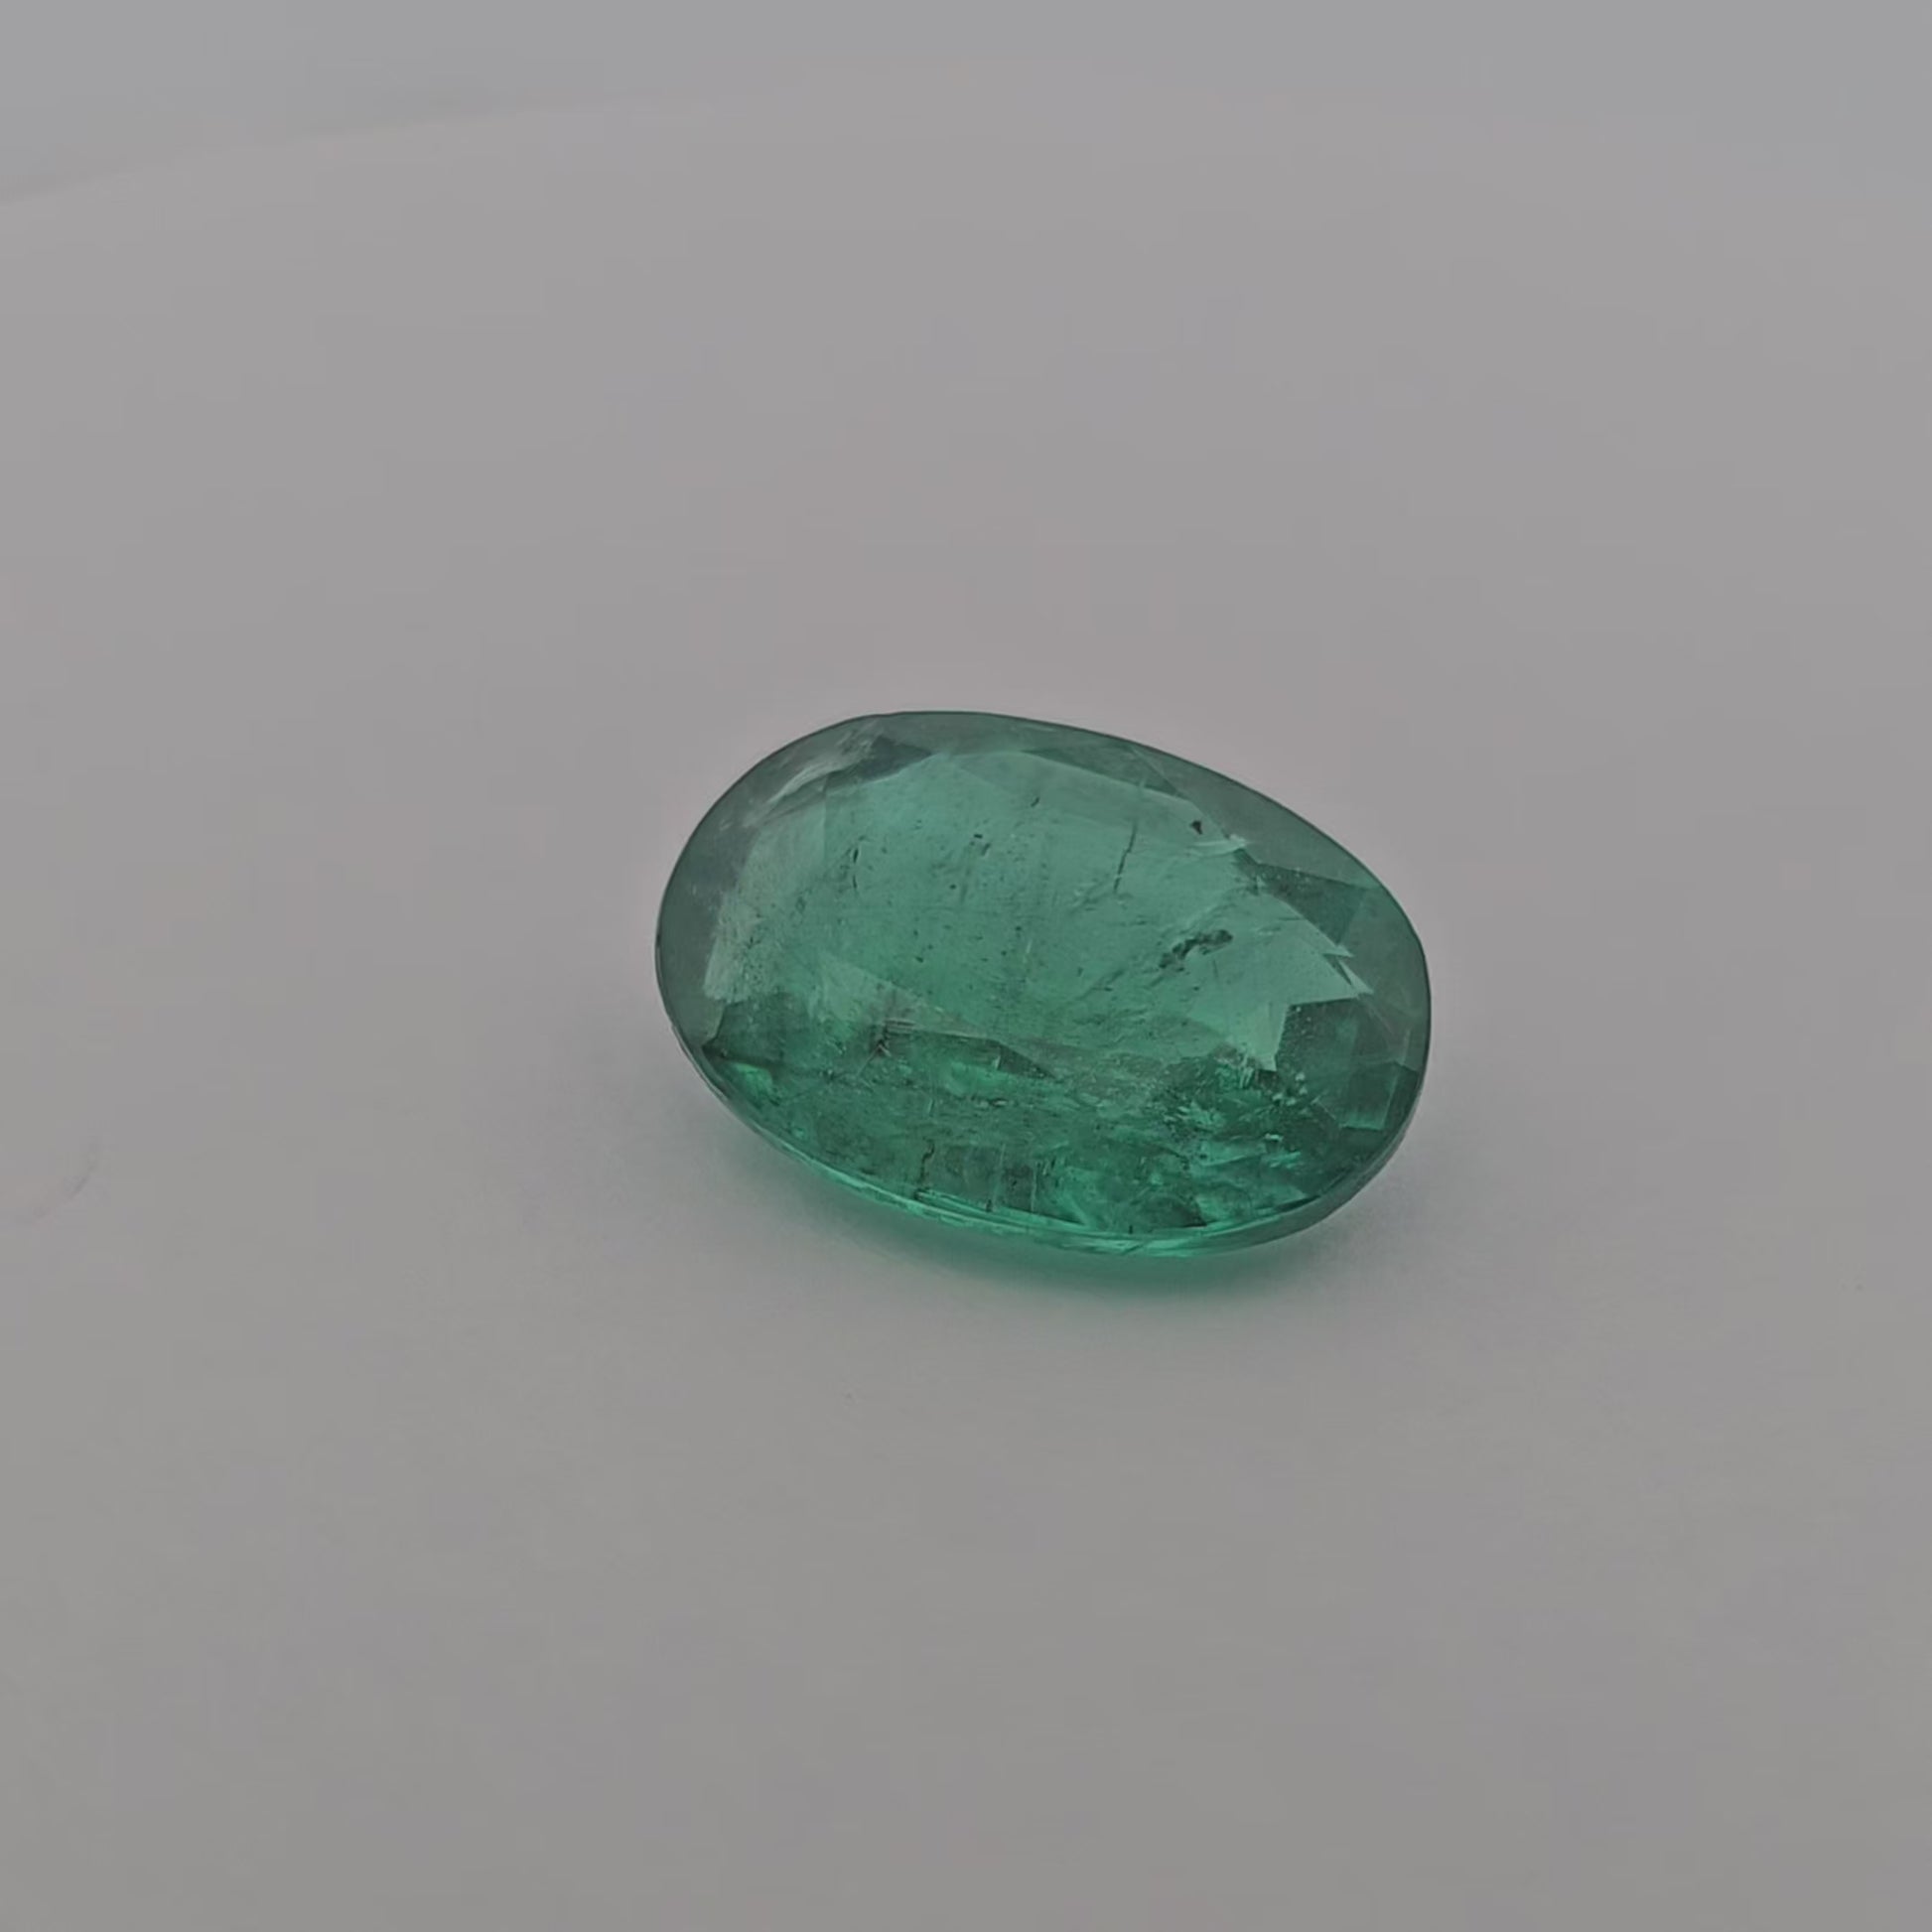 Natural Zambian Emerald Stone 5.38 Carats Oval Cut